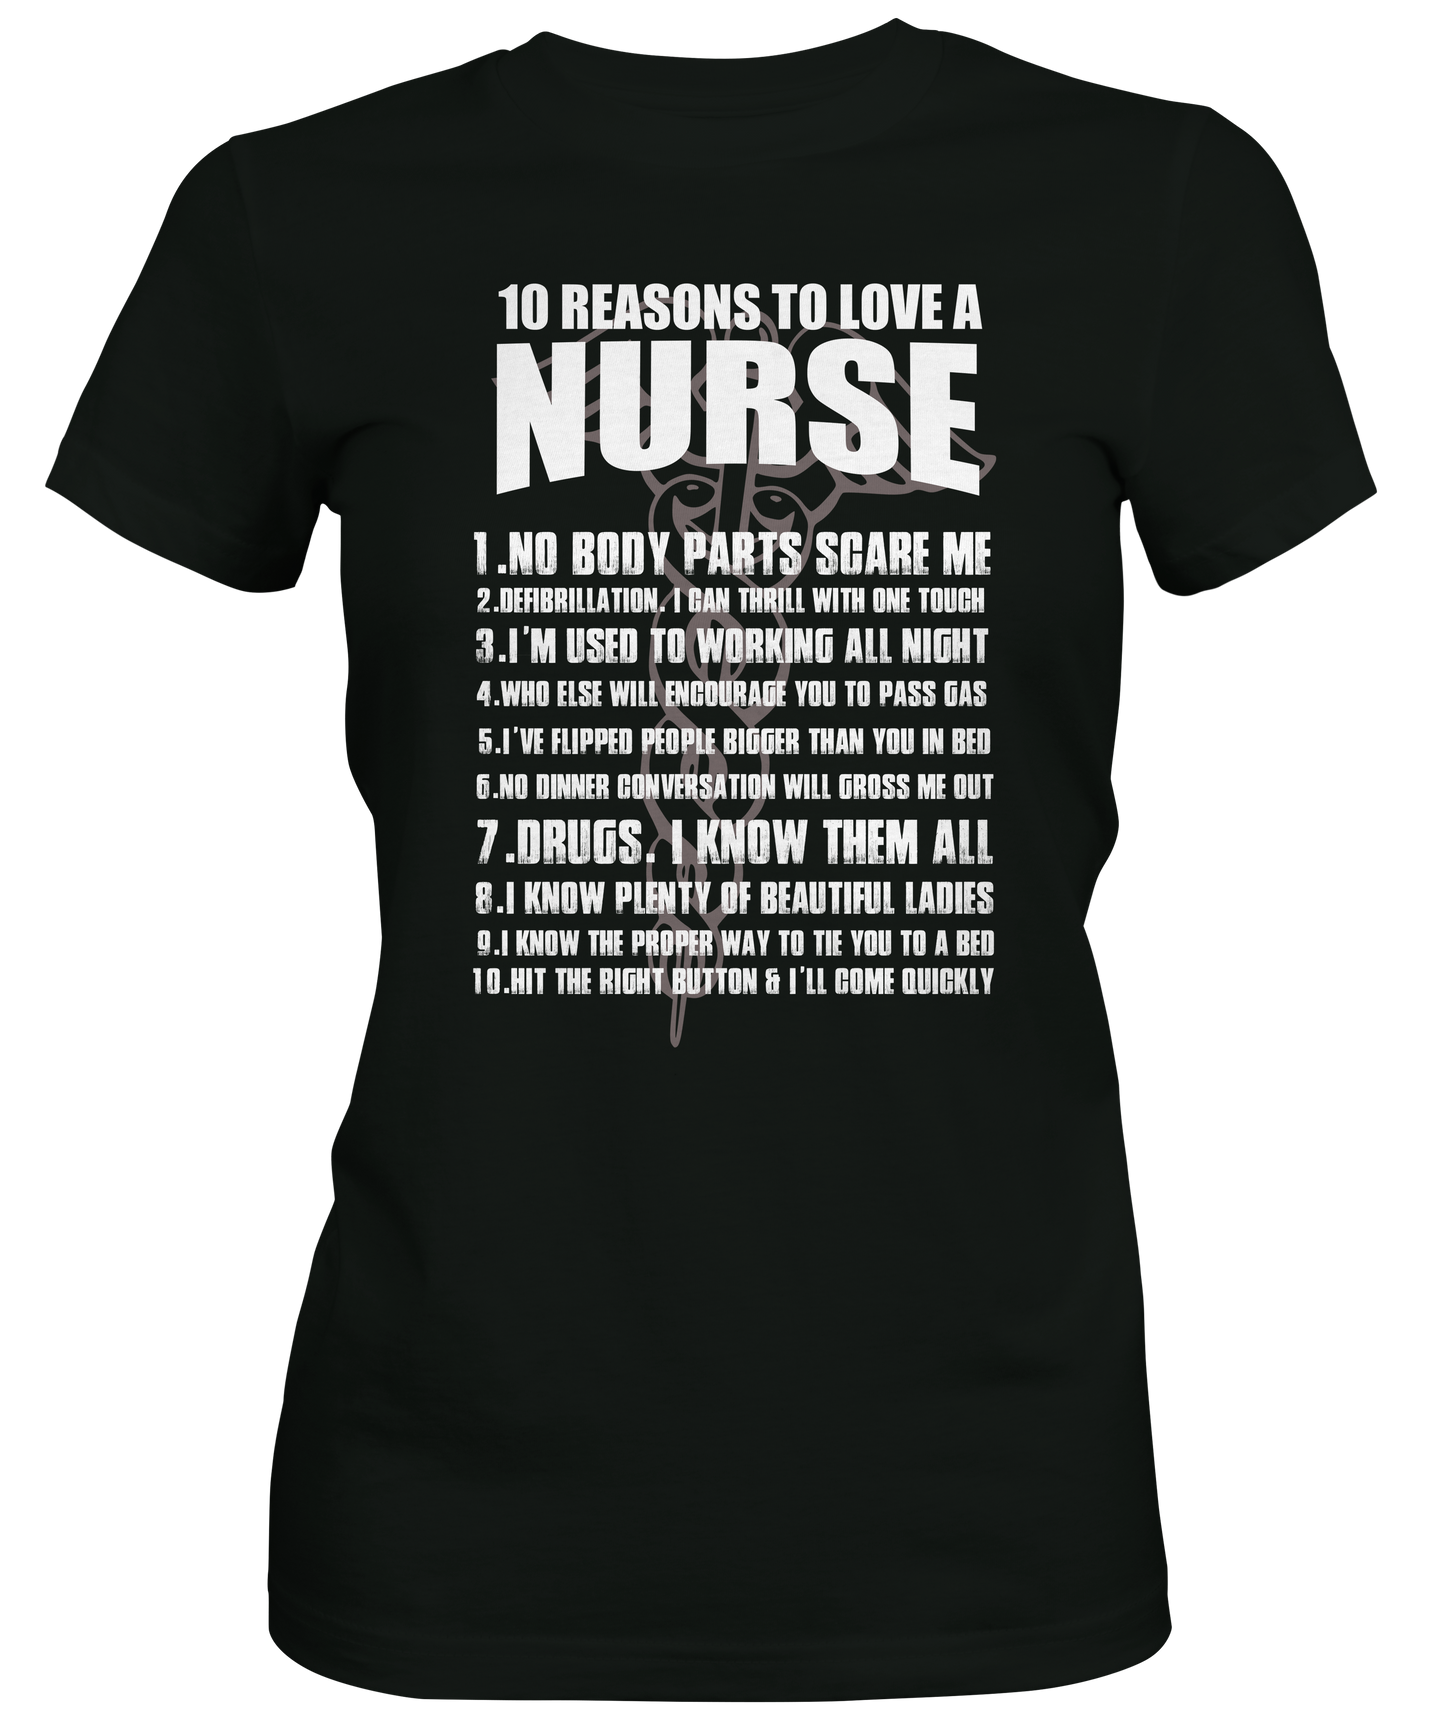 Black graphic T-shirt about Nurses 